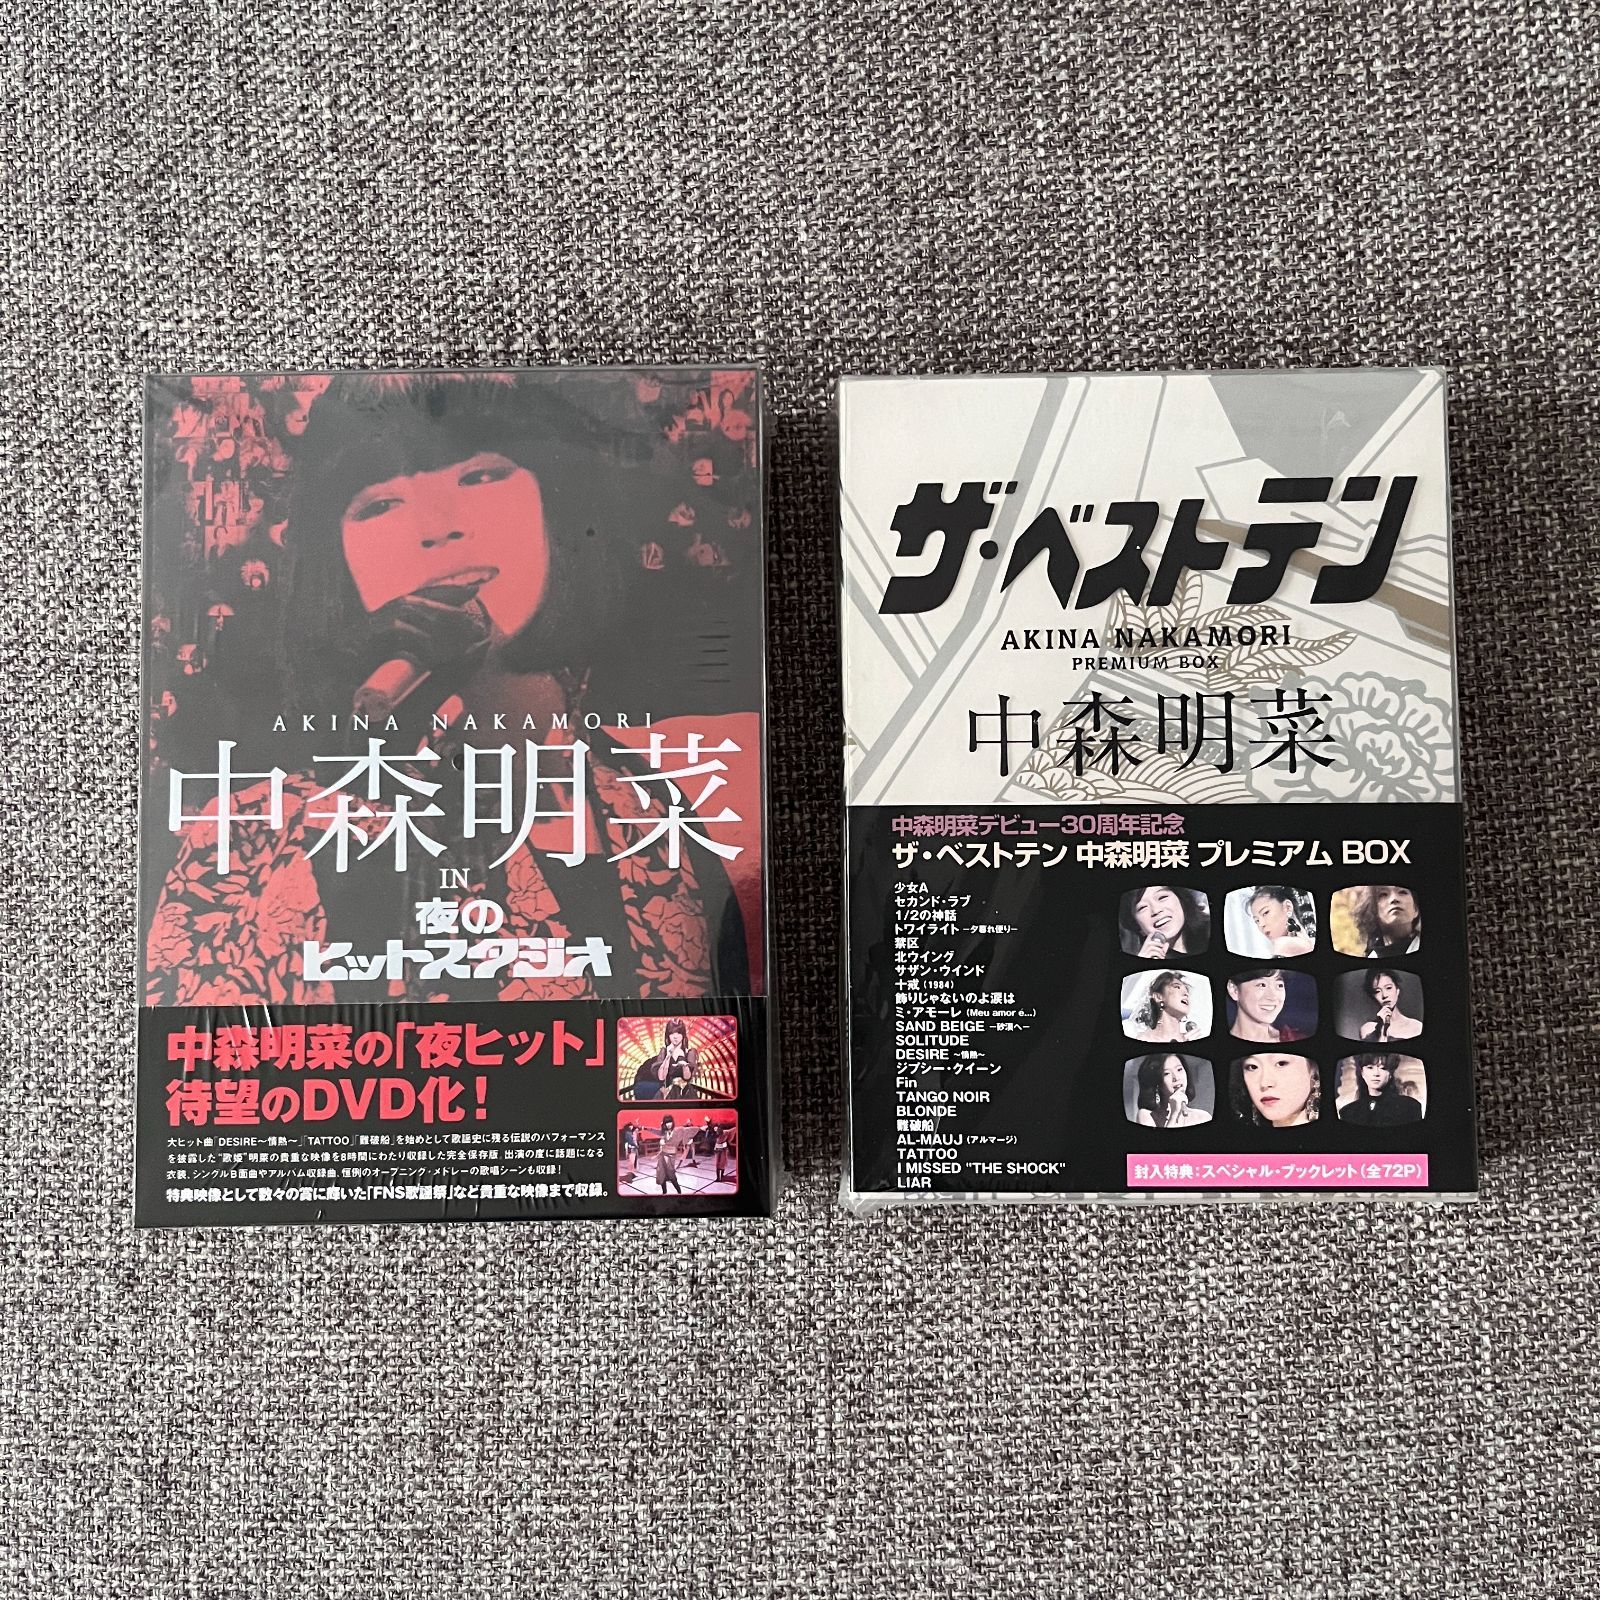 中森明菜 in 夜のヒットスタジオ ザ・ベストテン DVD - メルカリ